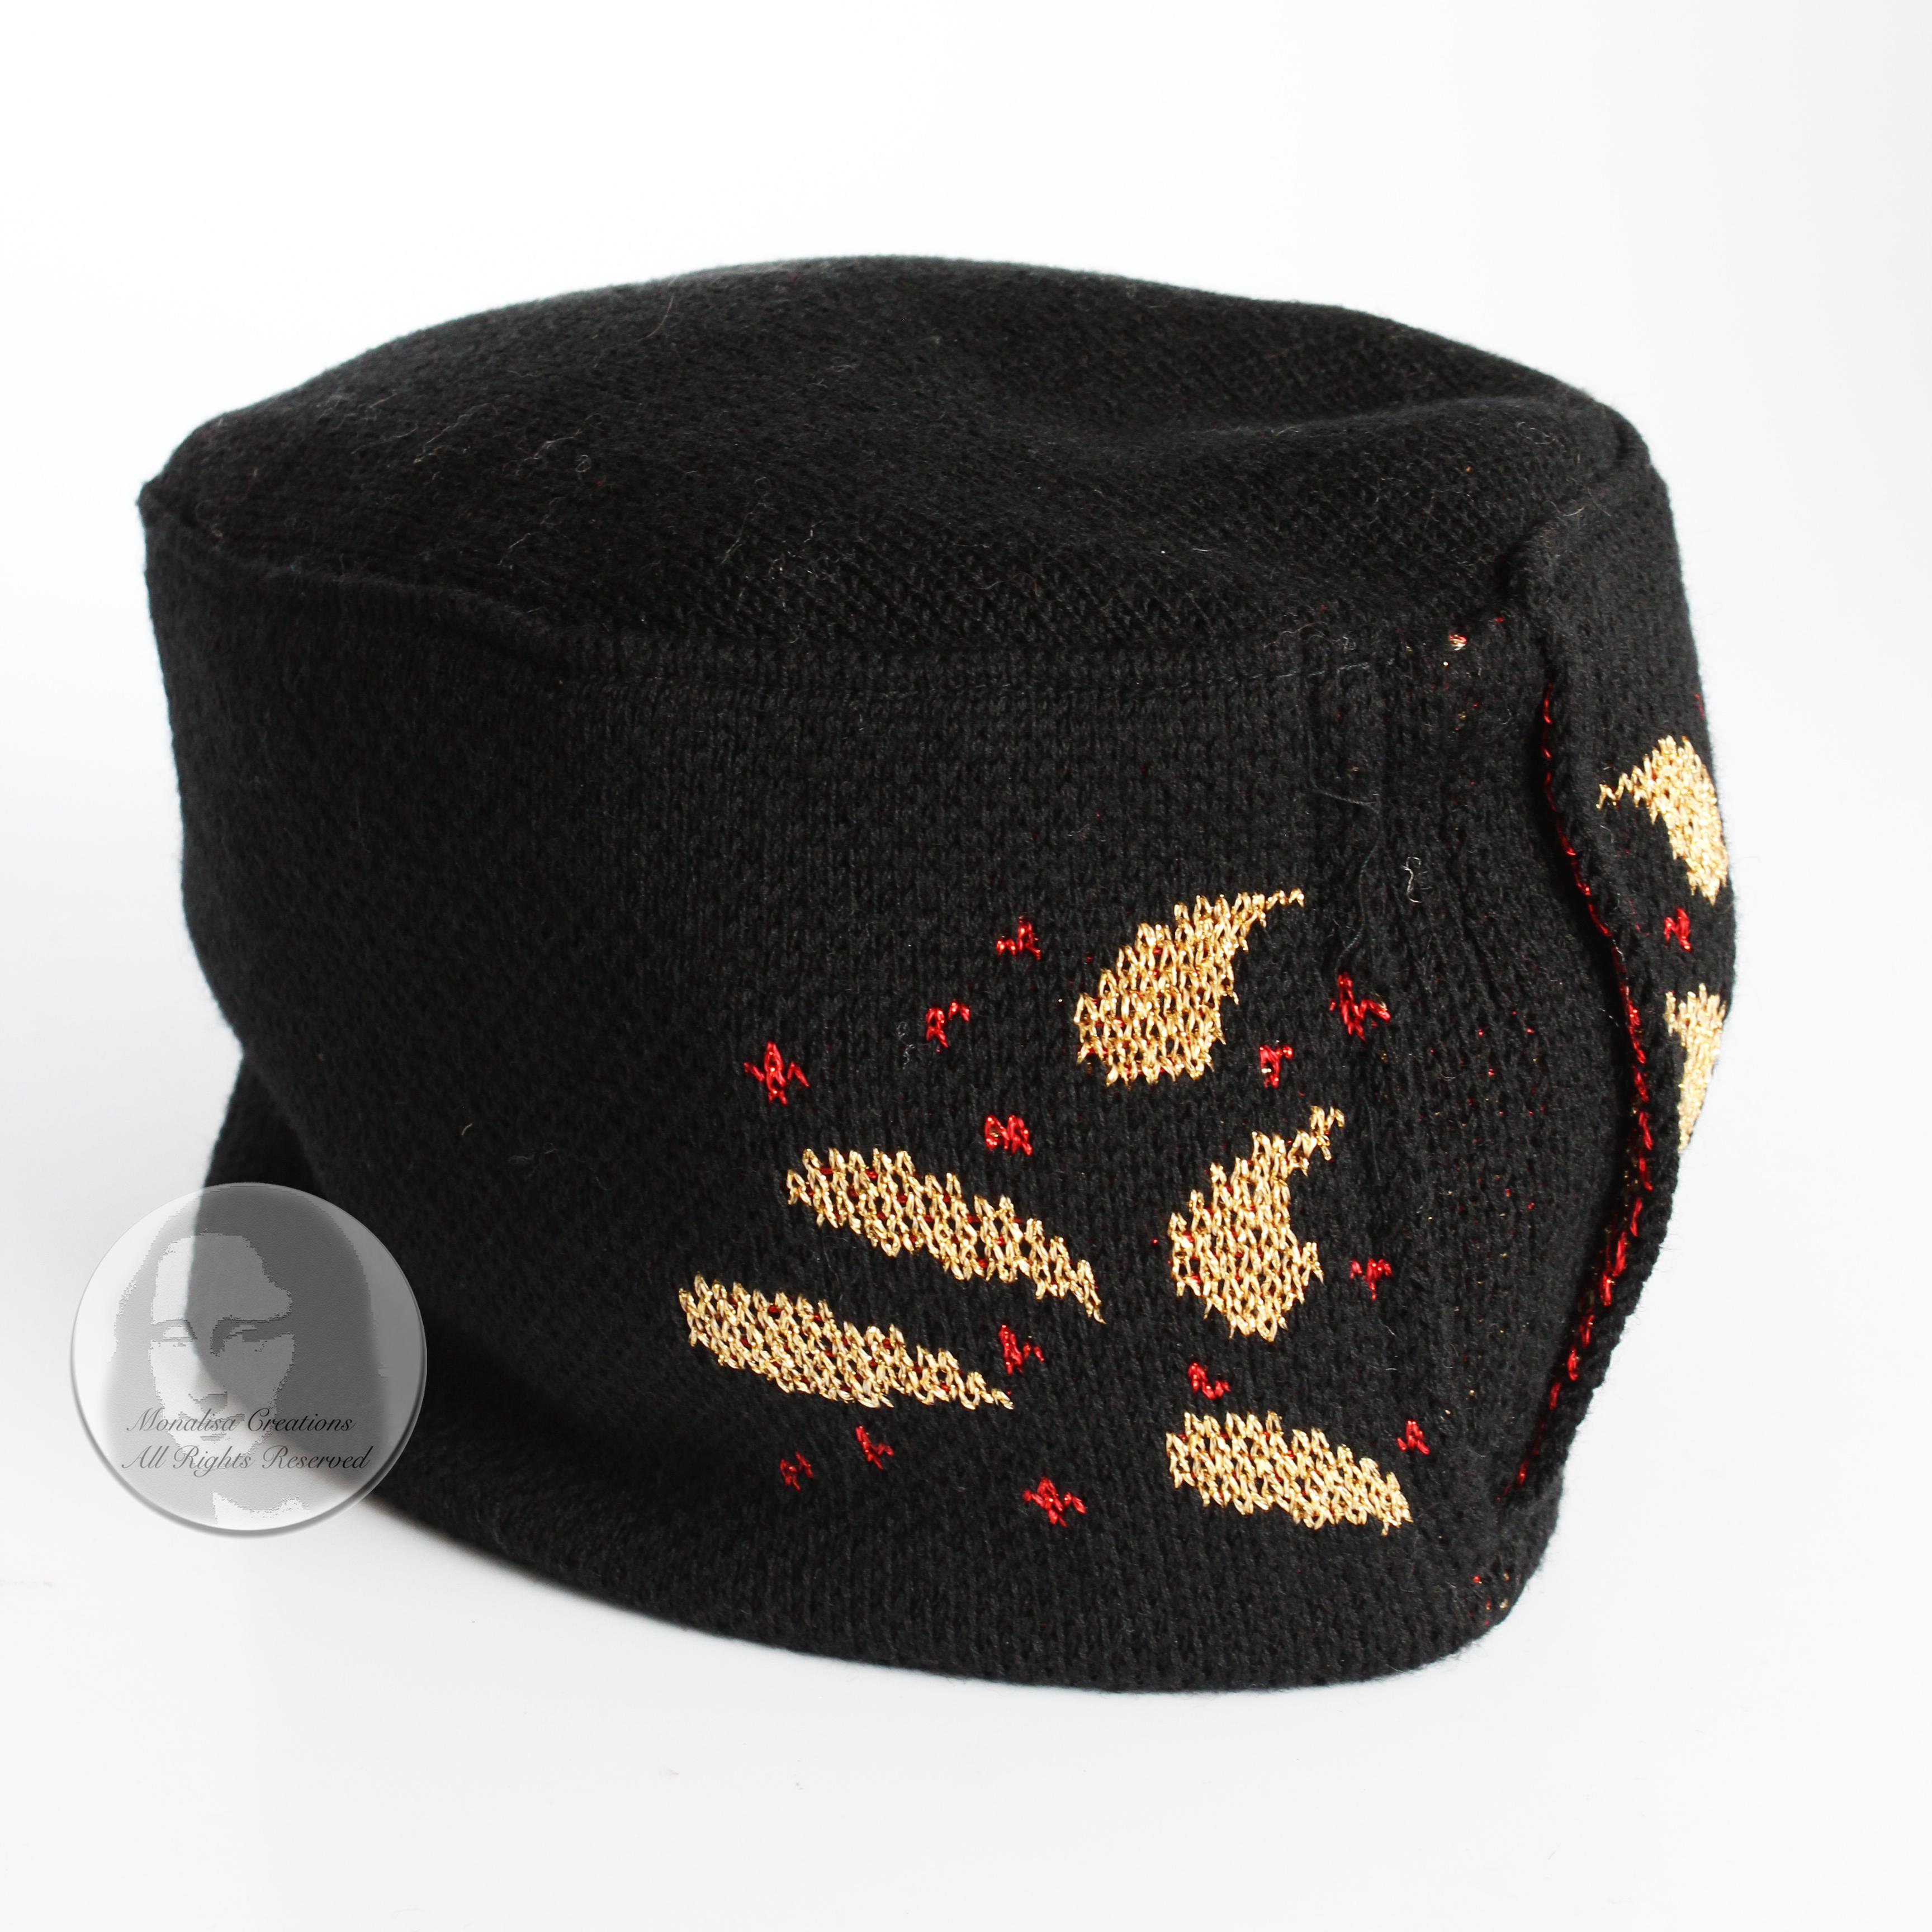 Gebrauchte Vintage-Strickmütze, hergestellt von Yves Saint Laurent, wahrscheinlich Ende der 70er oder Anfang der 80er Jahre.  Er ist aus einem Woll-Metallic-Gemisch gestrickt und im Fez-Stil mit einem abstrakten Paisleymuster in Gold und Rot